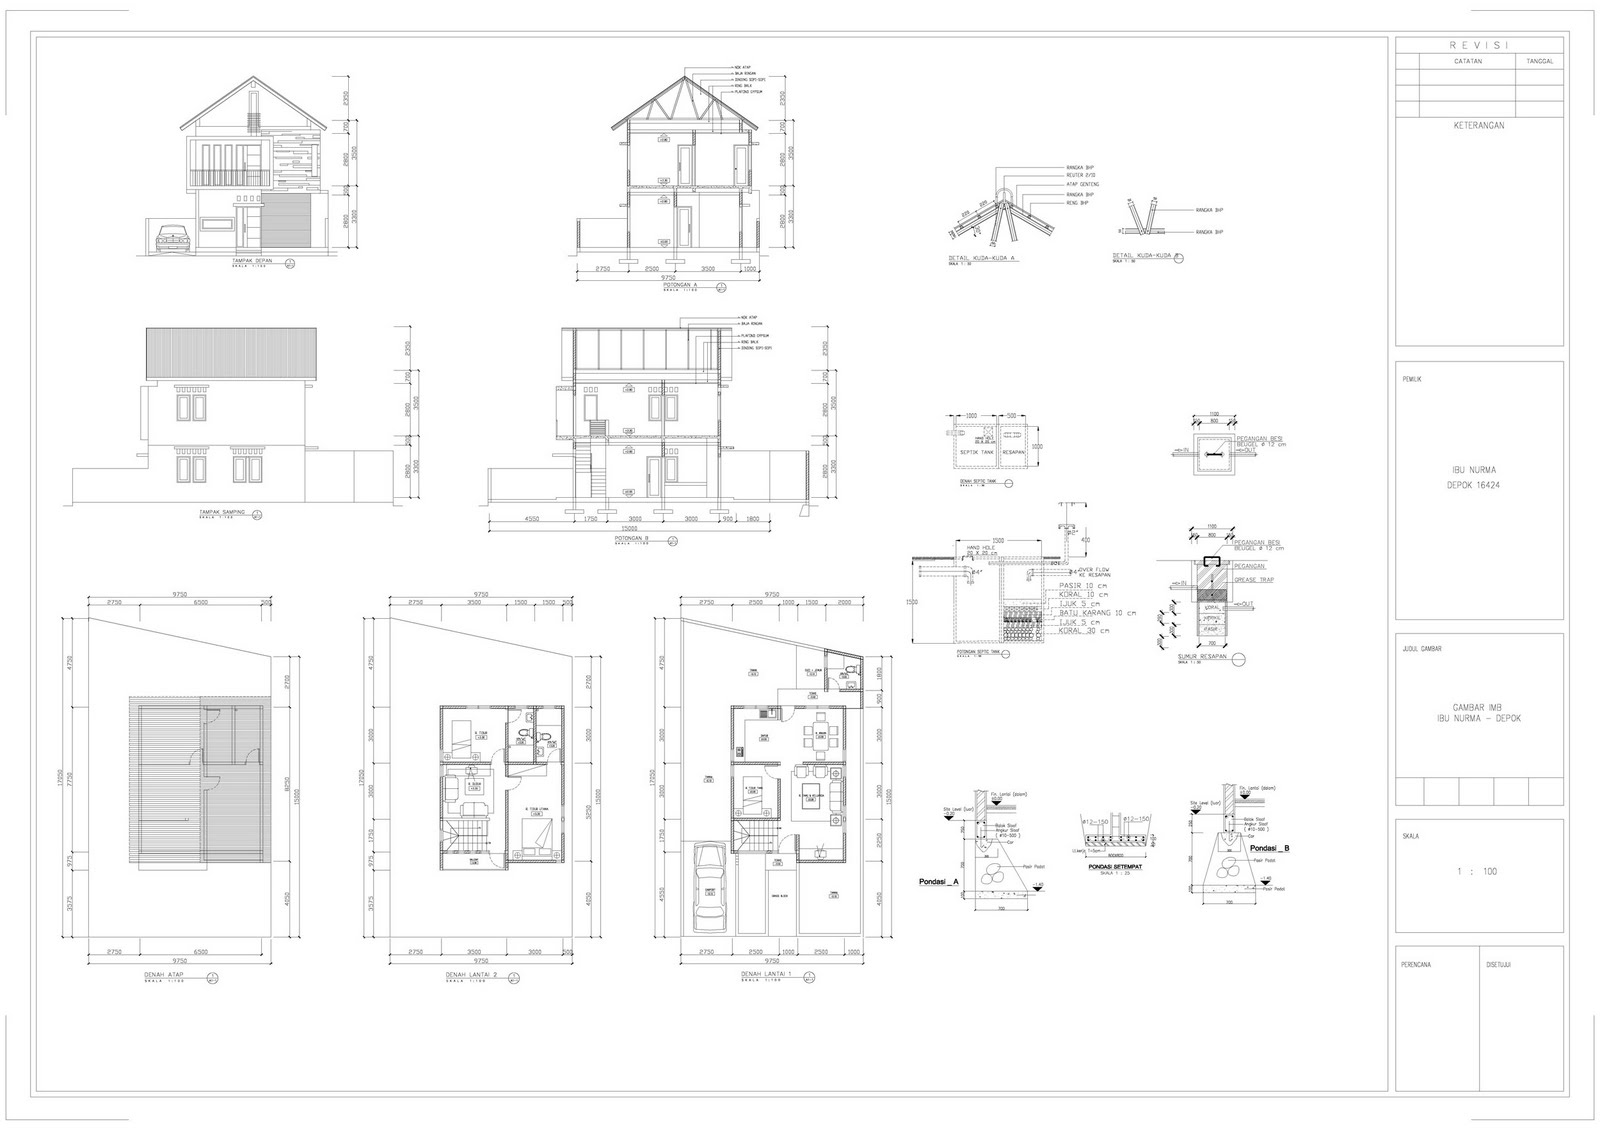 70 Desain Rumah Minimalis Pdf Desain Rumah Minimalis Terbaru